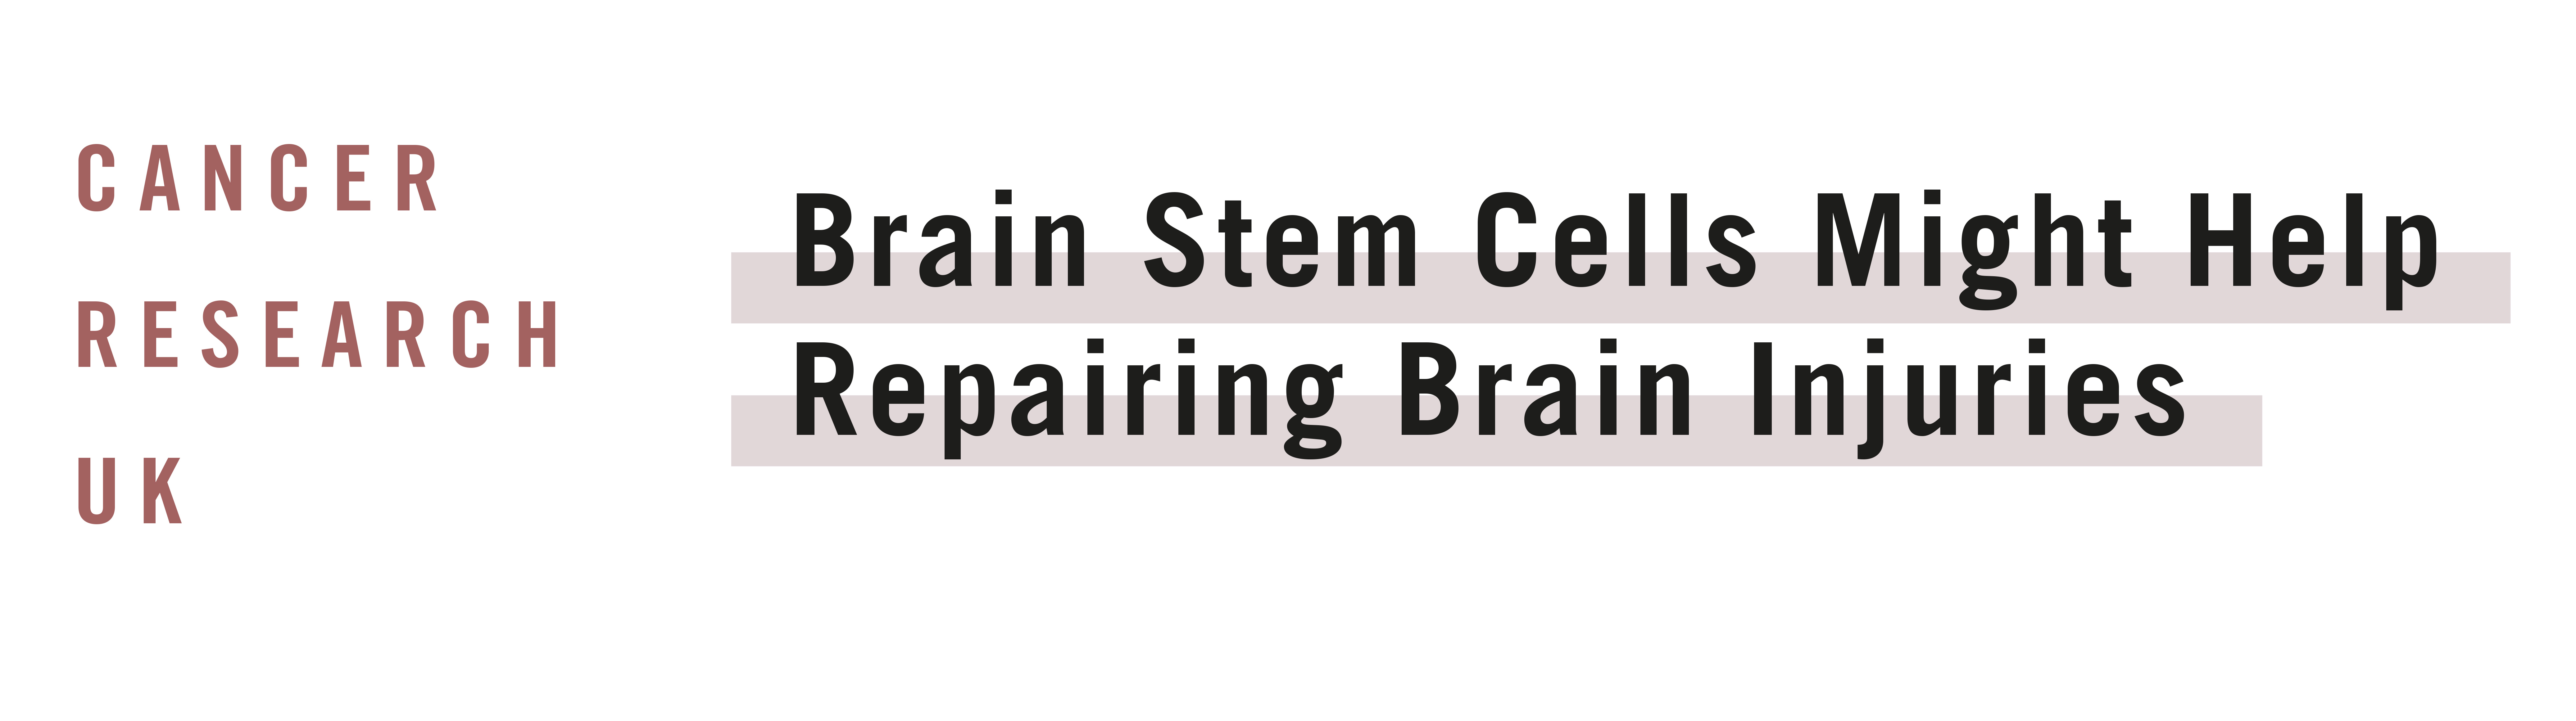 Stem Cells That Could Help Repairing Brain Diseases